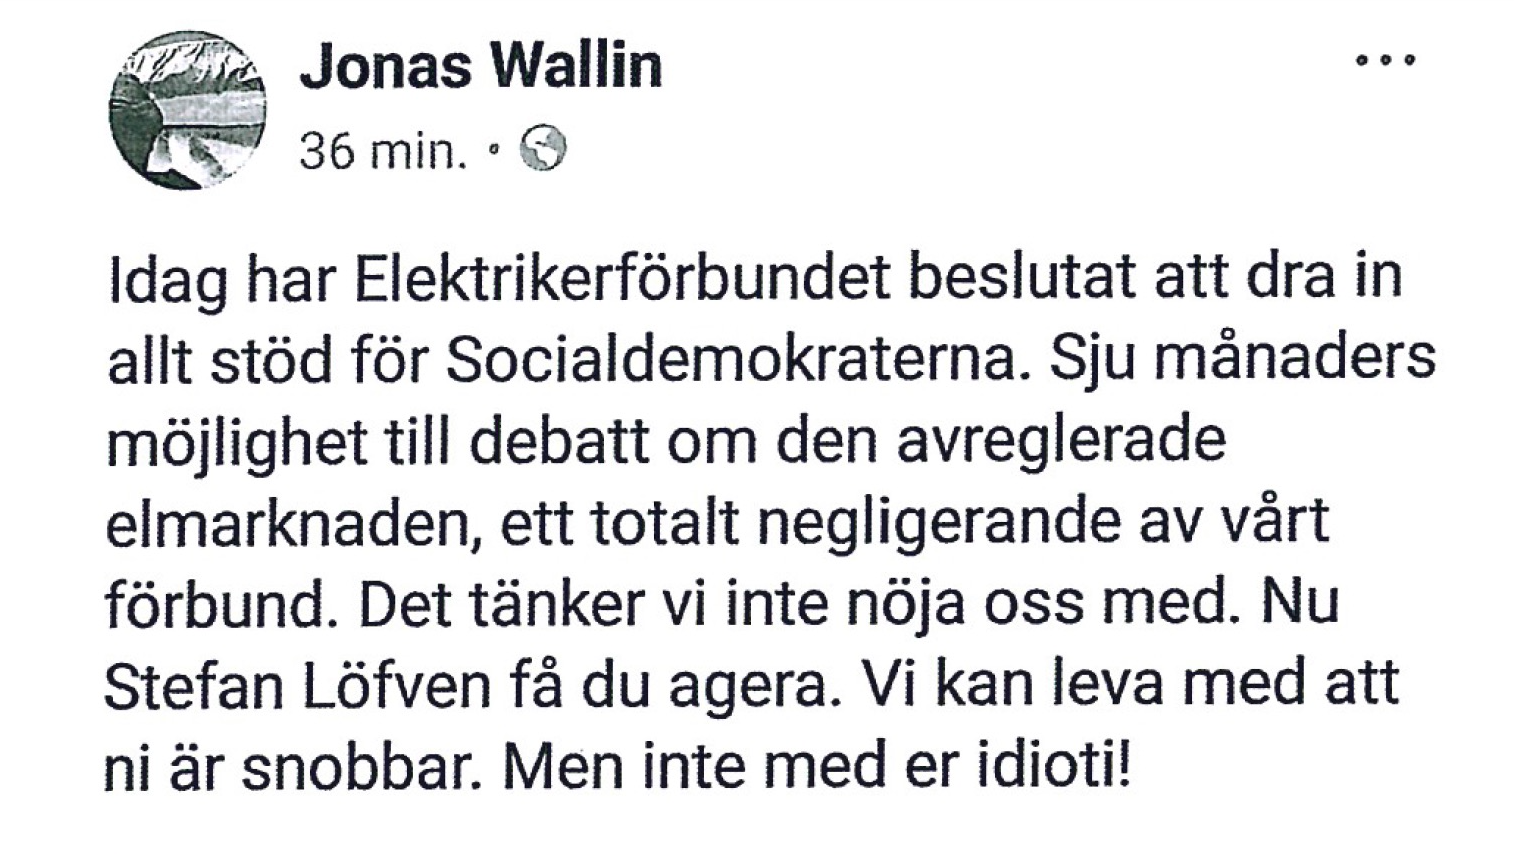 Wallins inlägg på Facebook, som han sedan tvingades radera efter hård intern kritik.